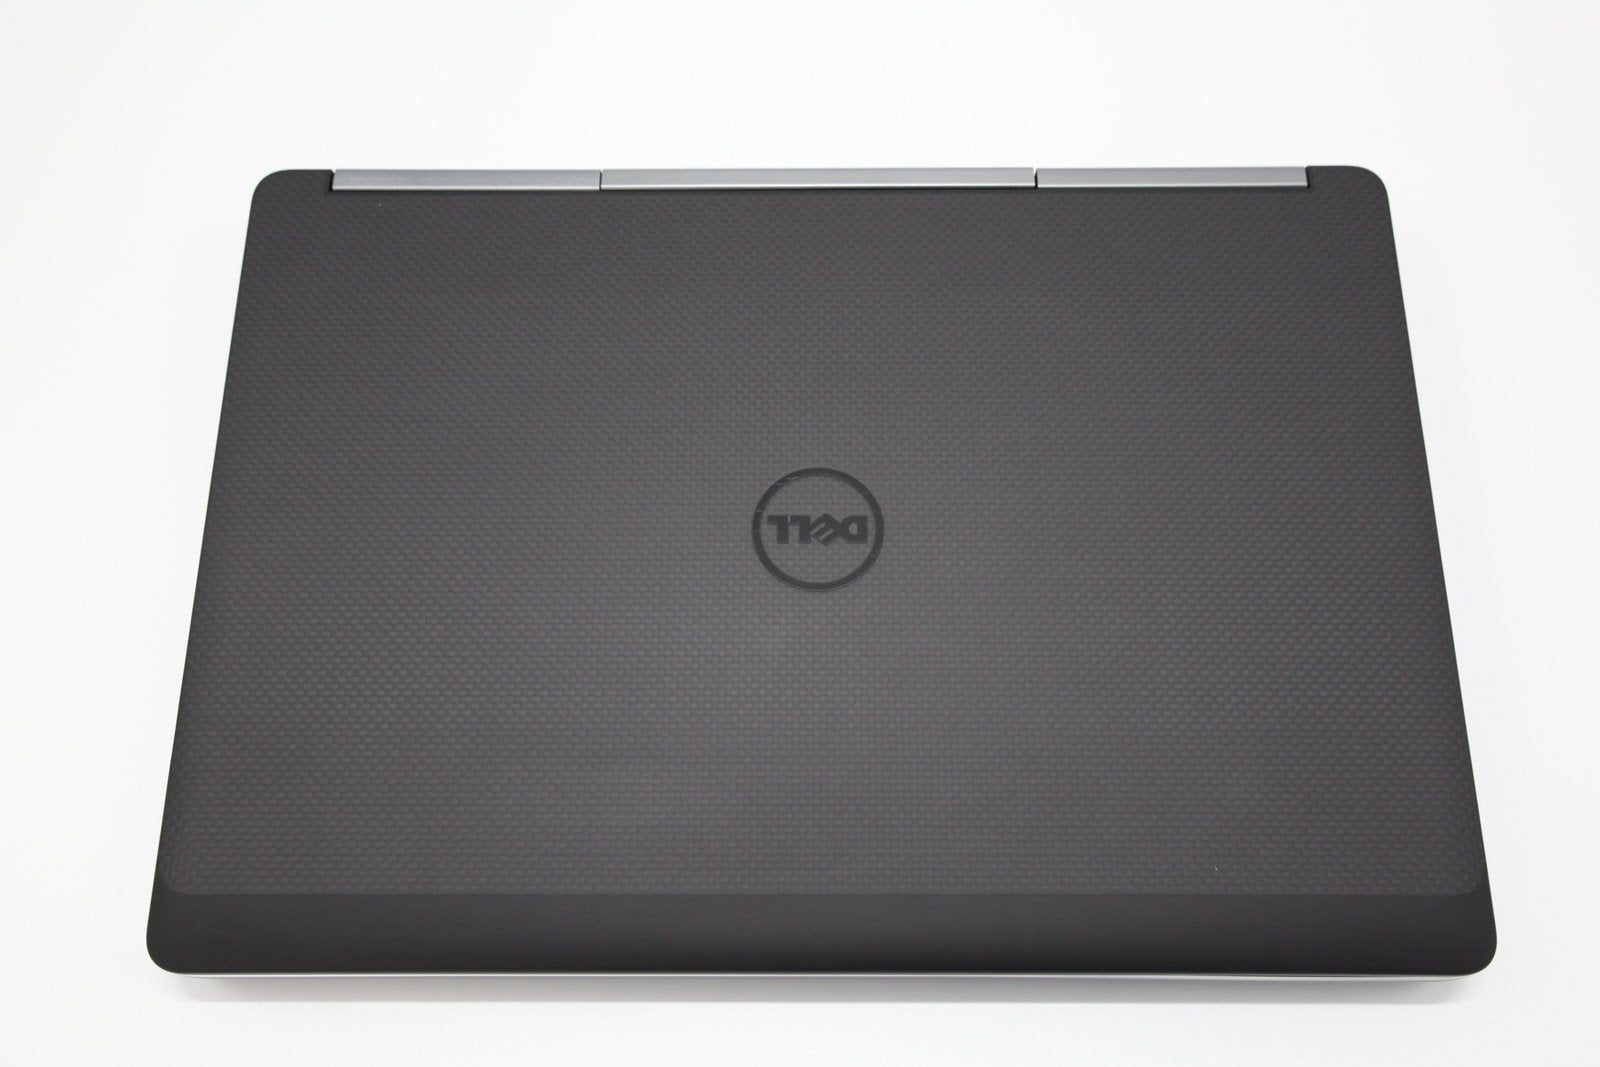 Dell Precision 7510 Laptop Core i7 32GB RAM 512GB SSD NVIDIA Quadro Warranty VAT - CruiseTech